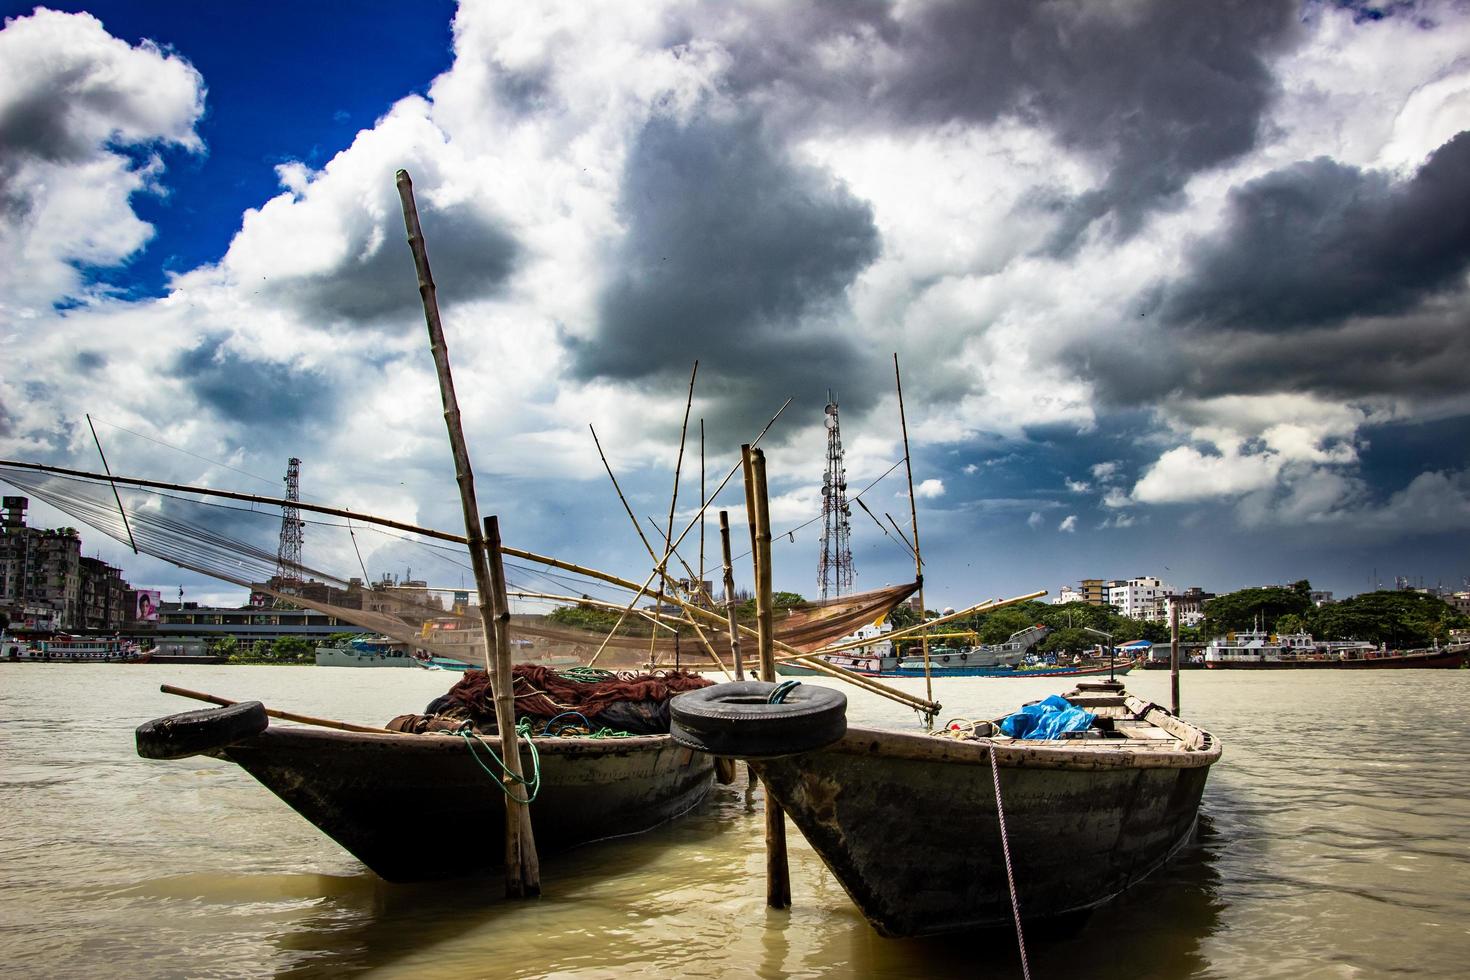 traditionele vissersboot op de rivieroever onder de bewolkte hemel foto